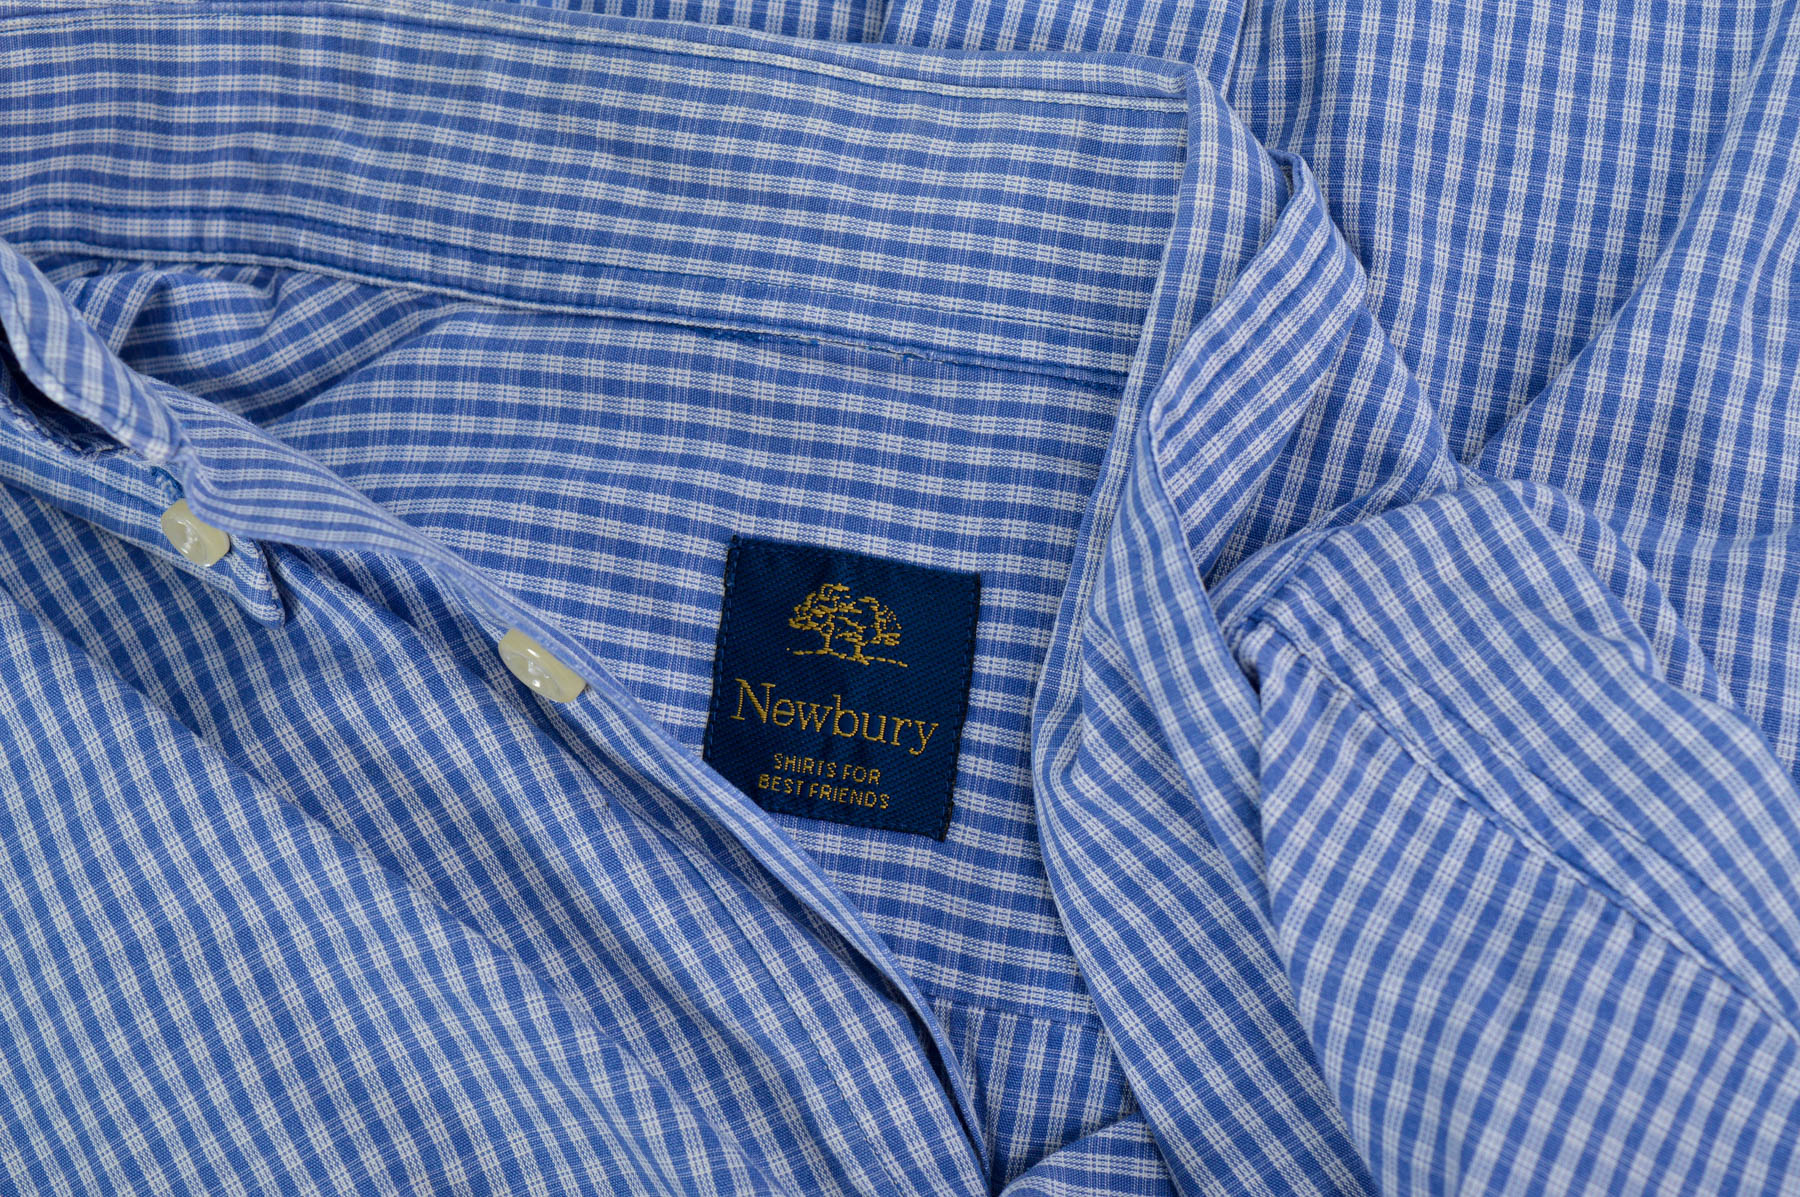 Men's shirt - Newbury - 2